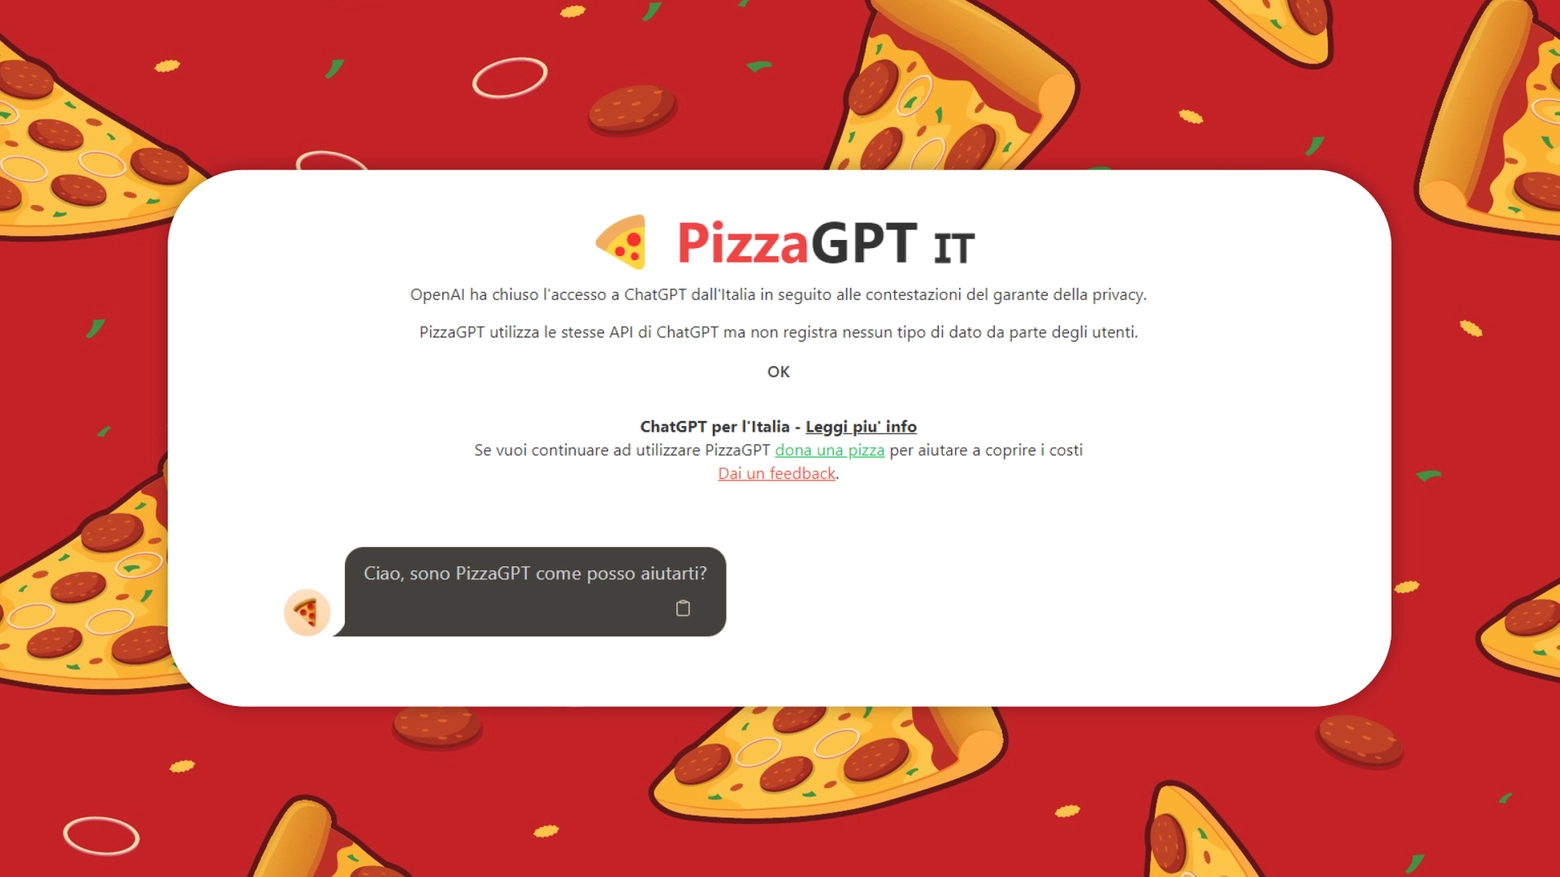 PizzaGpt è completamente gratuito e accessibile dall'Italia